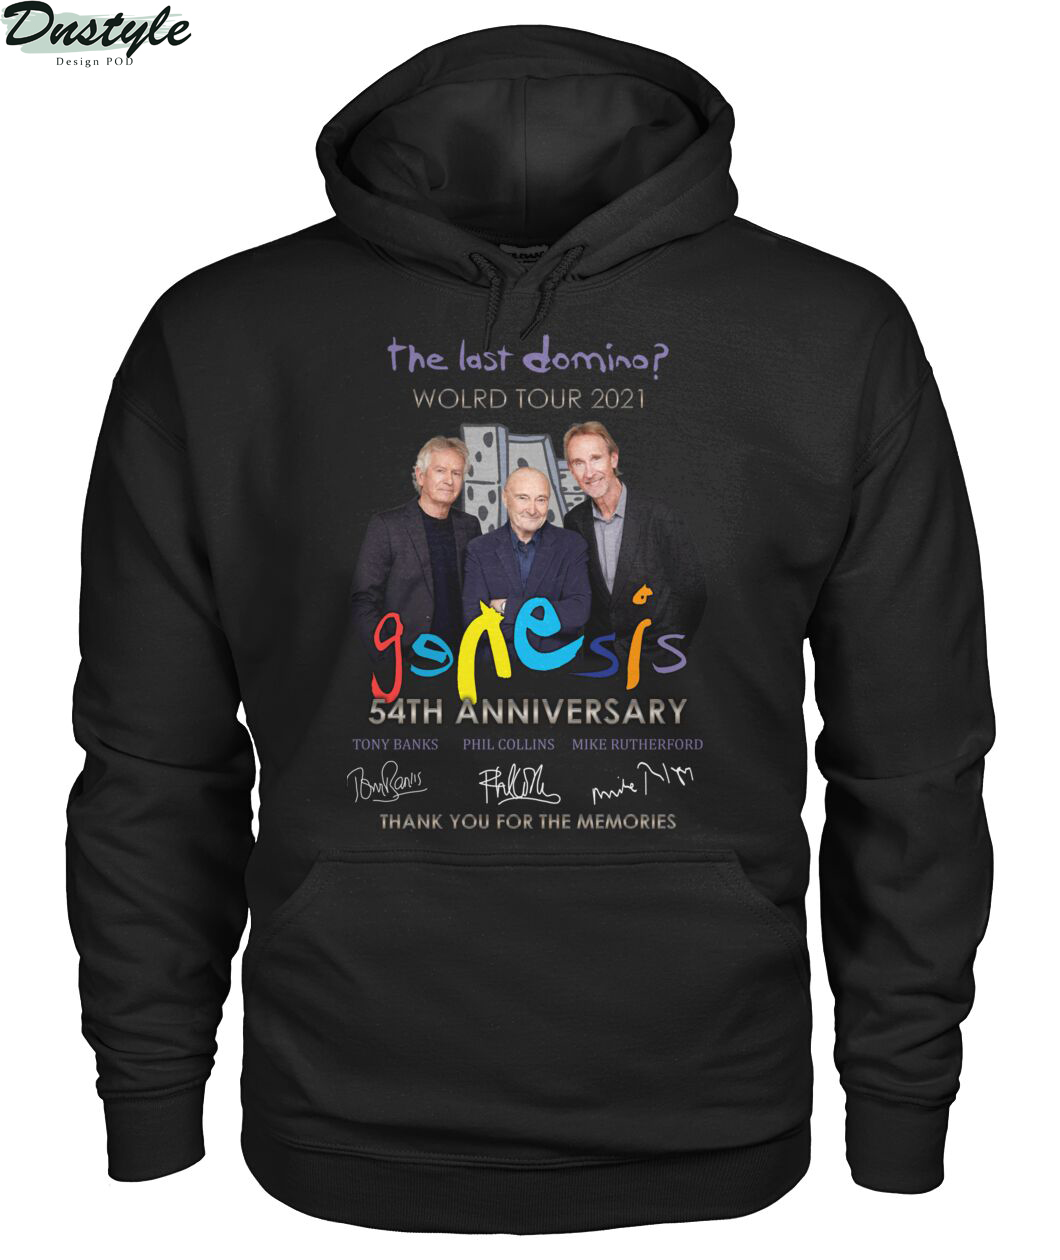 The last domino world tour 2021 Genesis 54th anniversary shirt